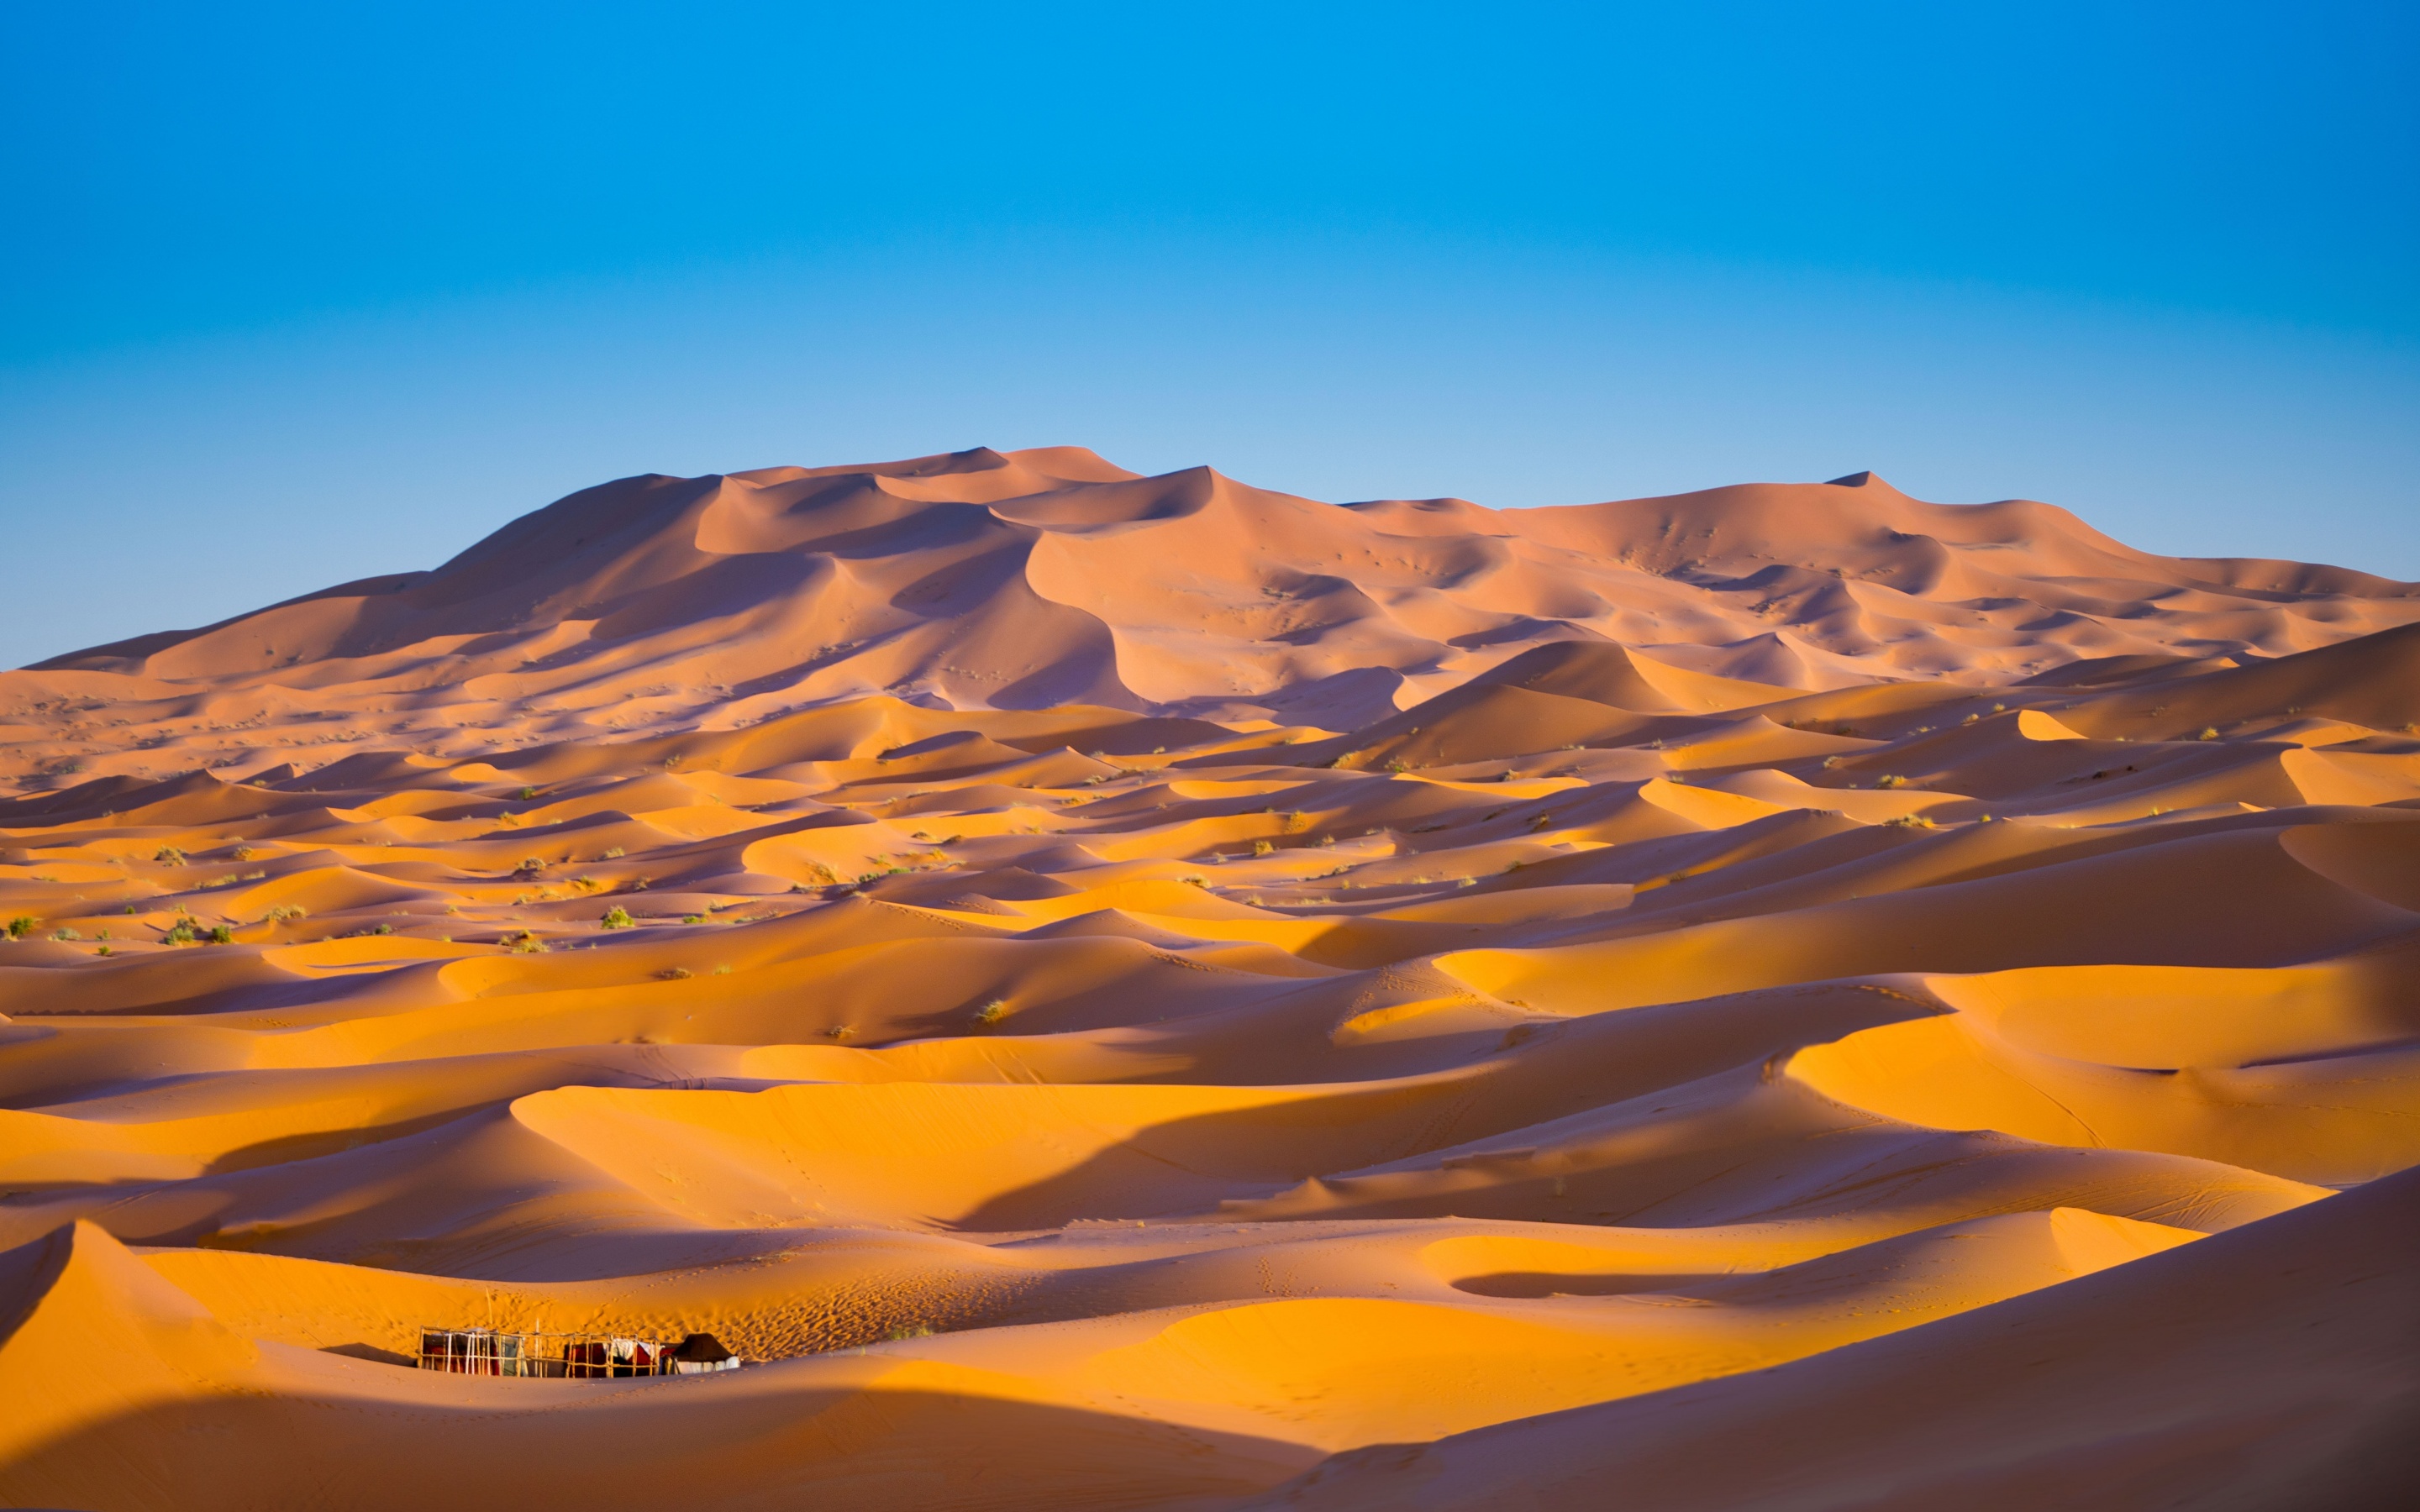 Sahara Desert 4K Wallpaper, Merzouga, Morocco, Sand dune, Blue Sky